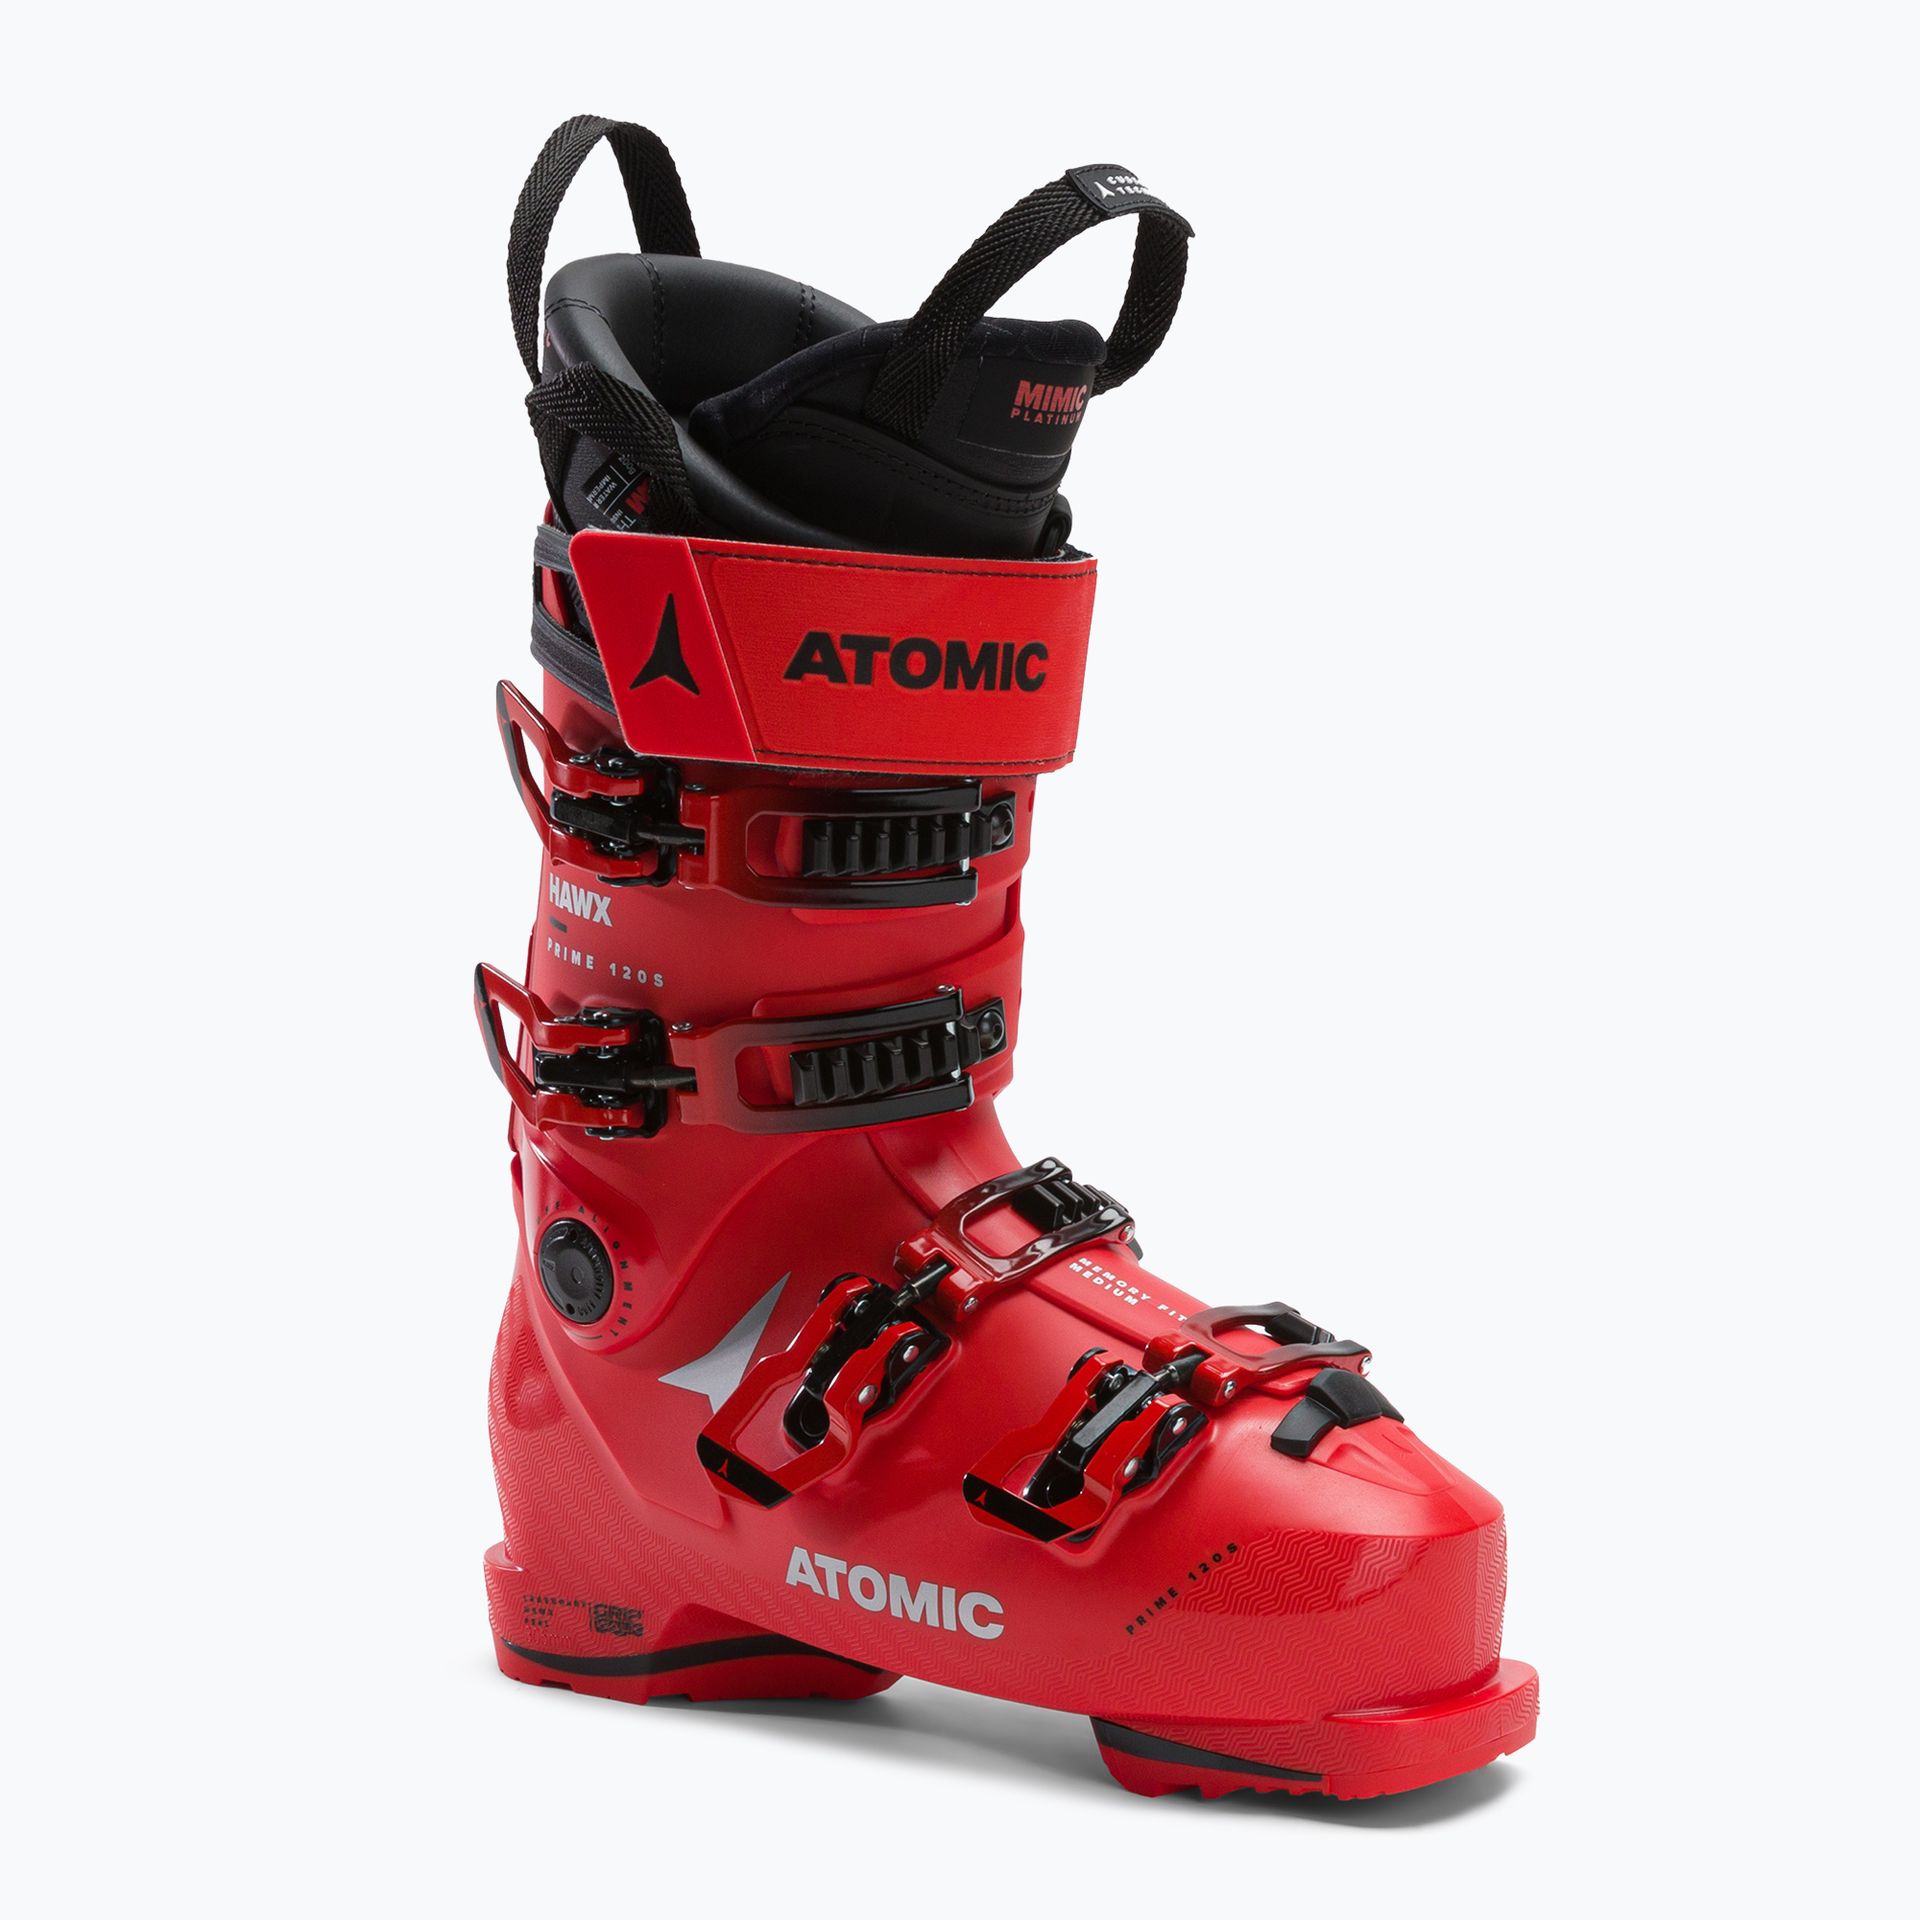 Buty narciarskie męskie ATOMIC Hawx Prime 120 S czerwone AE5026640